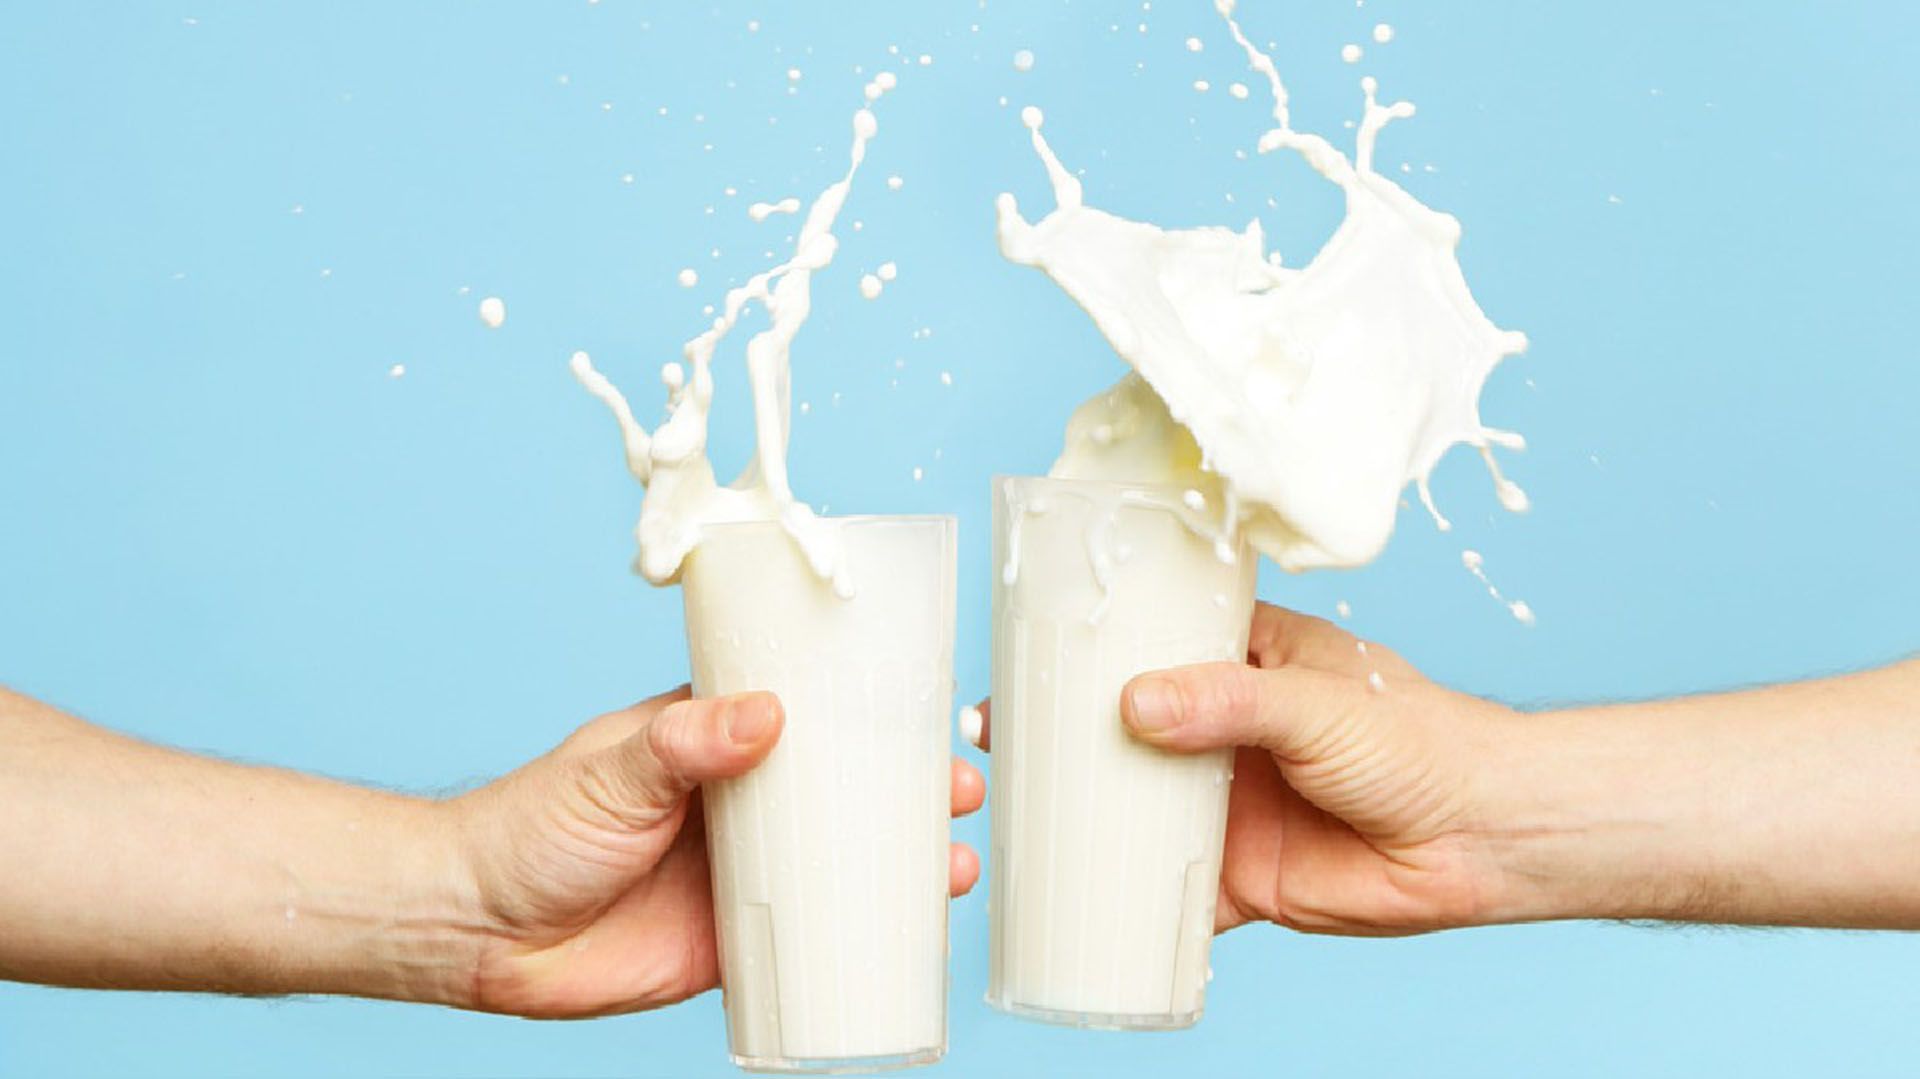 El Código Alimentario Argentino especifica claramente a qué producto se lo debe denominar ‘leche’: para los especialistas en nutrición, las bebidas vegetales provenientes de semillas o legumbres no pueden ser consideradas leche.  Tampoco los productos a base de yogurt y los llamados “alimentos lácteos” .